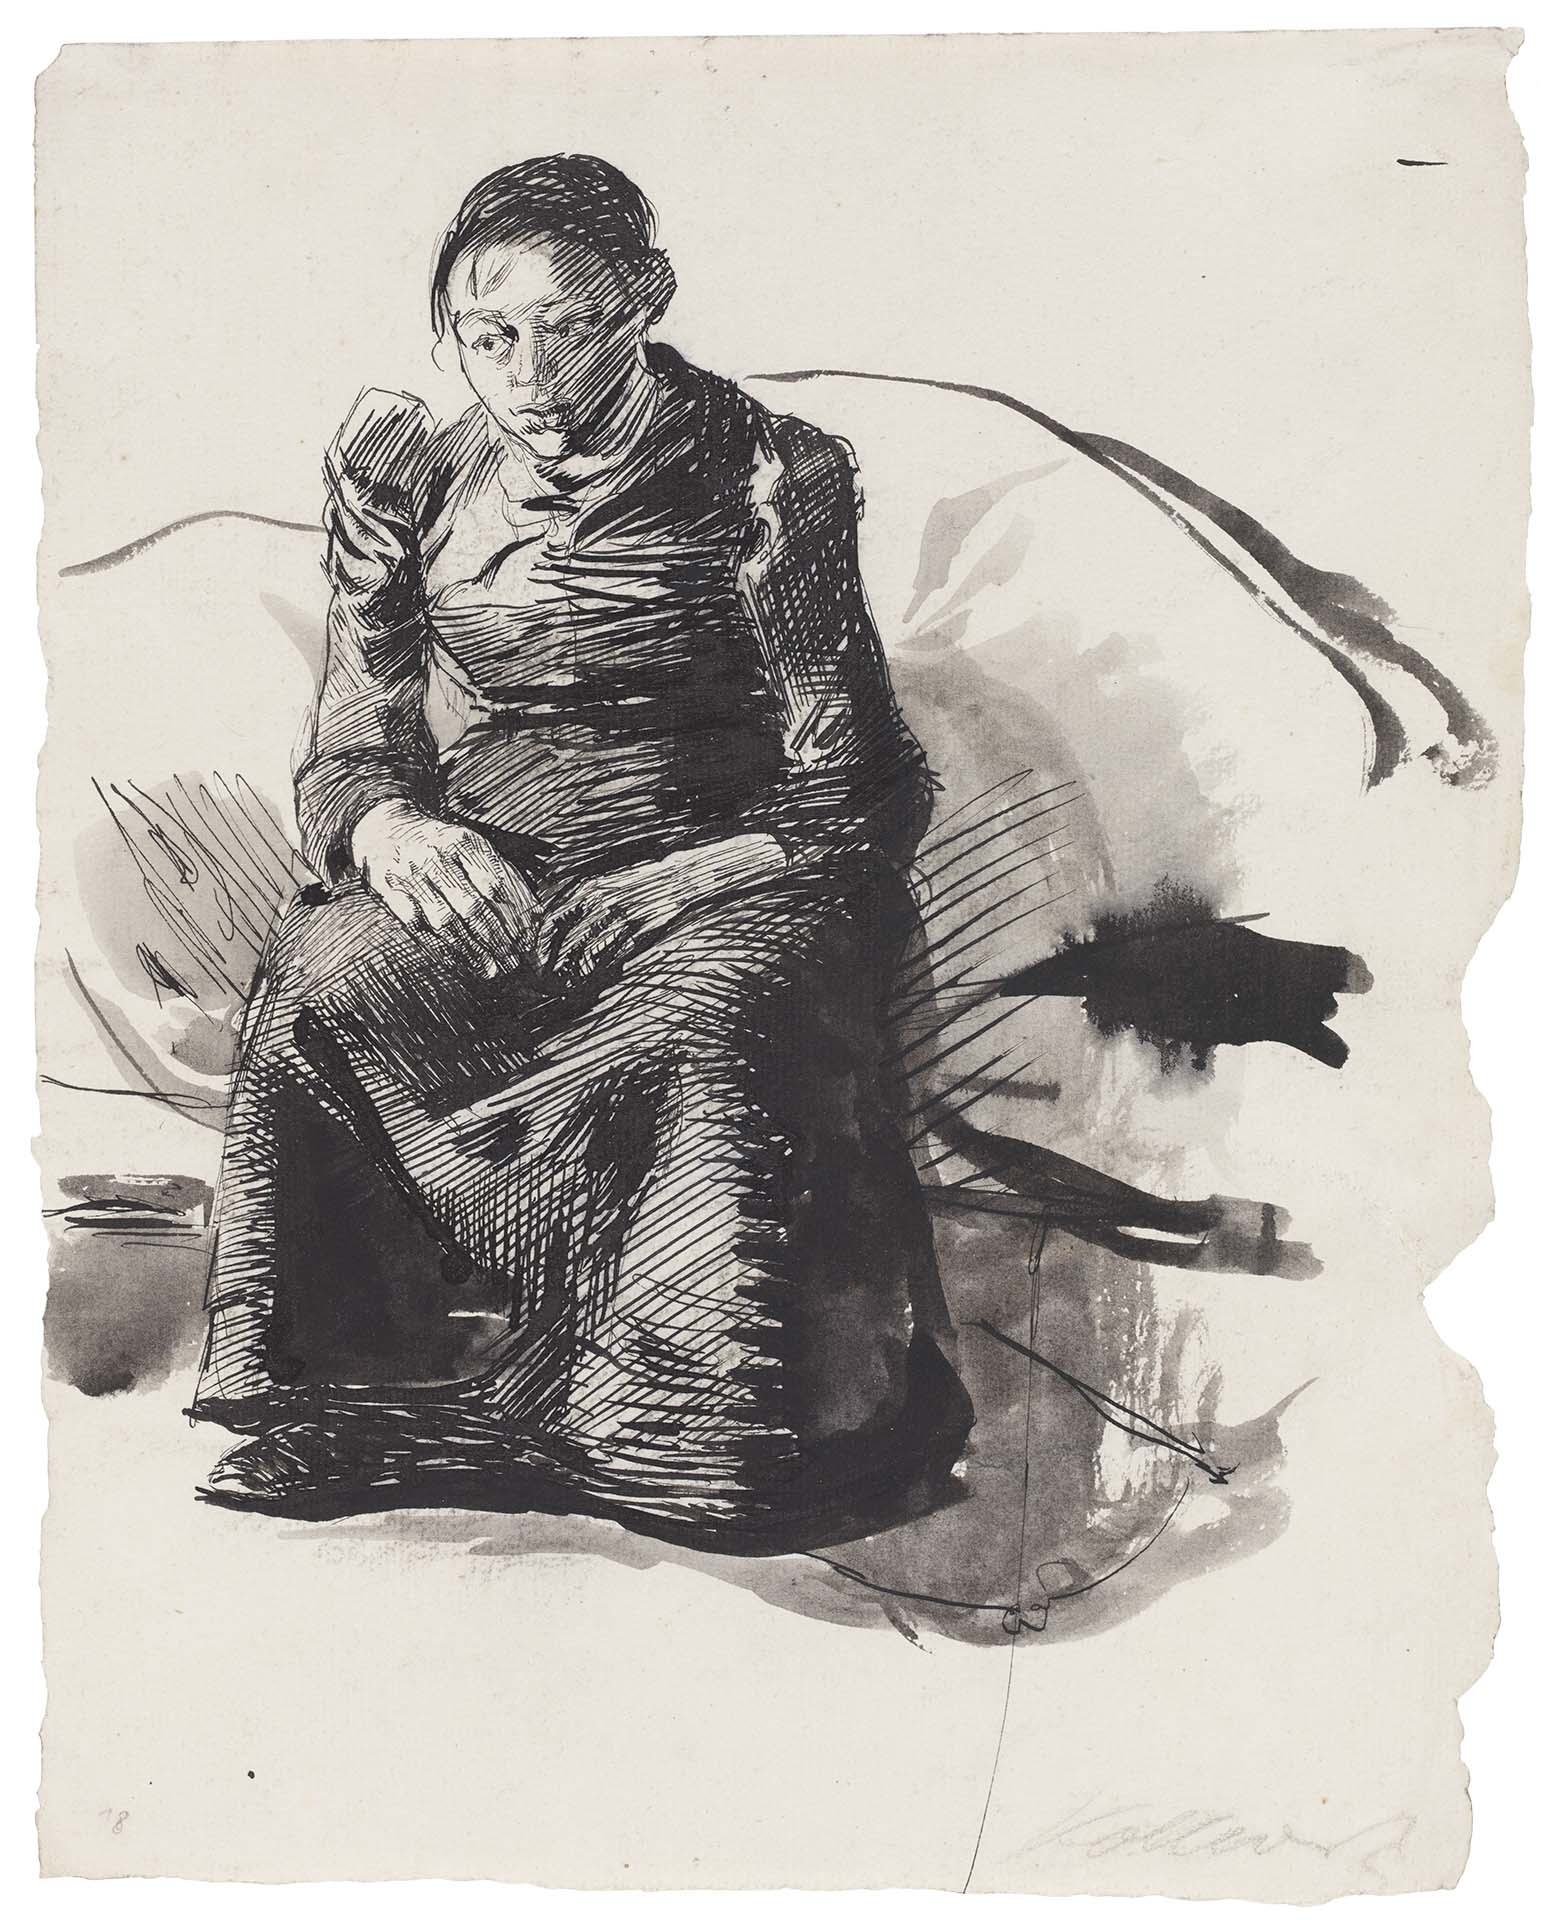 Käthe Kollwitz, Autoportrait assis et en pied, 1893, plume et encre noire, lavis, NT 87, Collection Kollwitz de Cologne © Käthe Kollwitz Museum Köln 